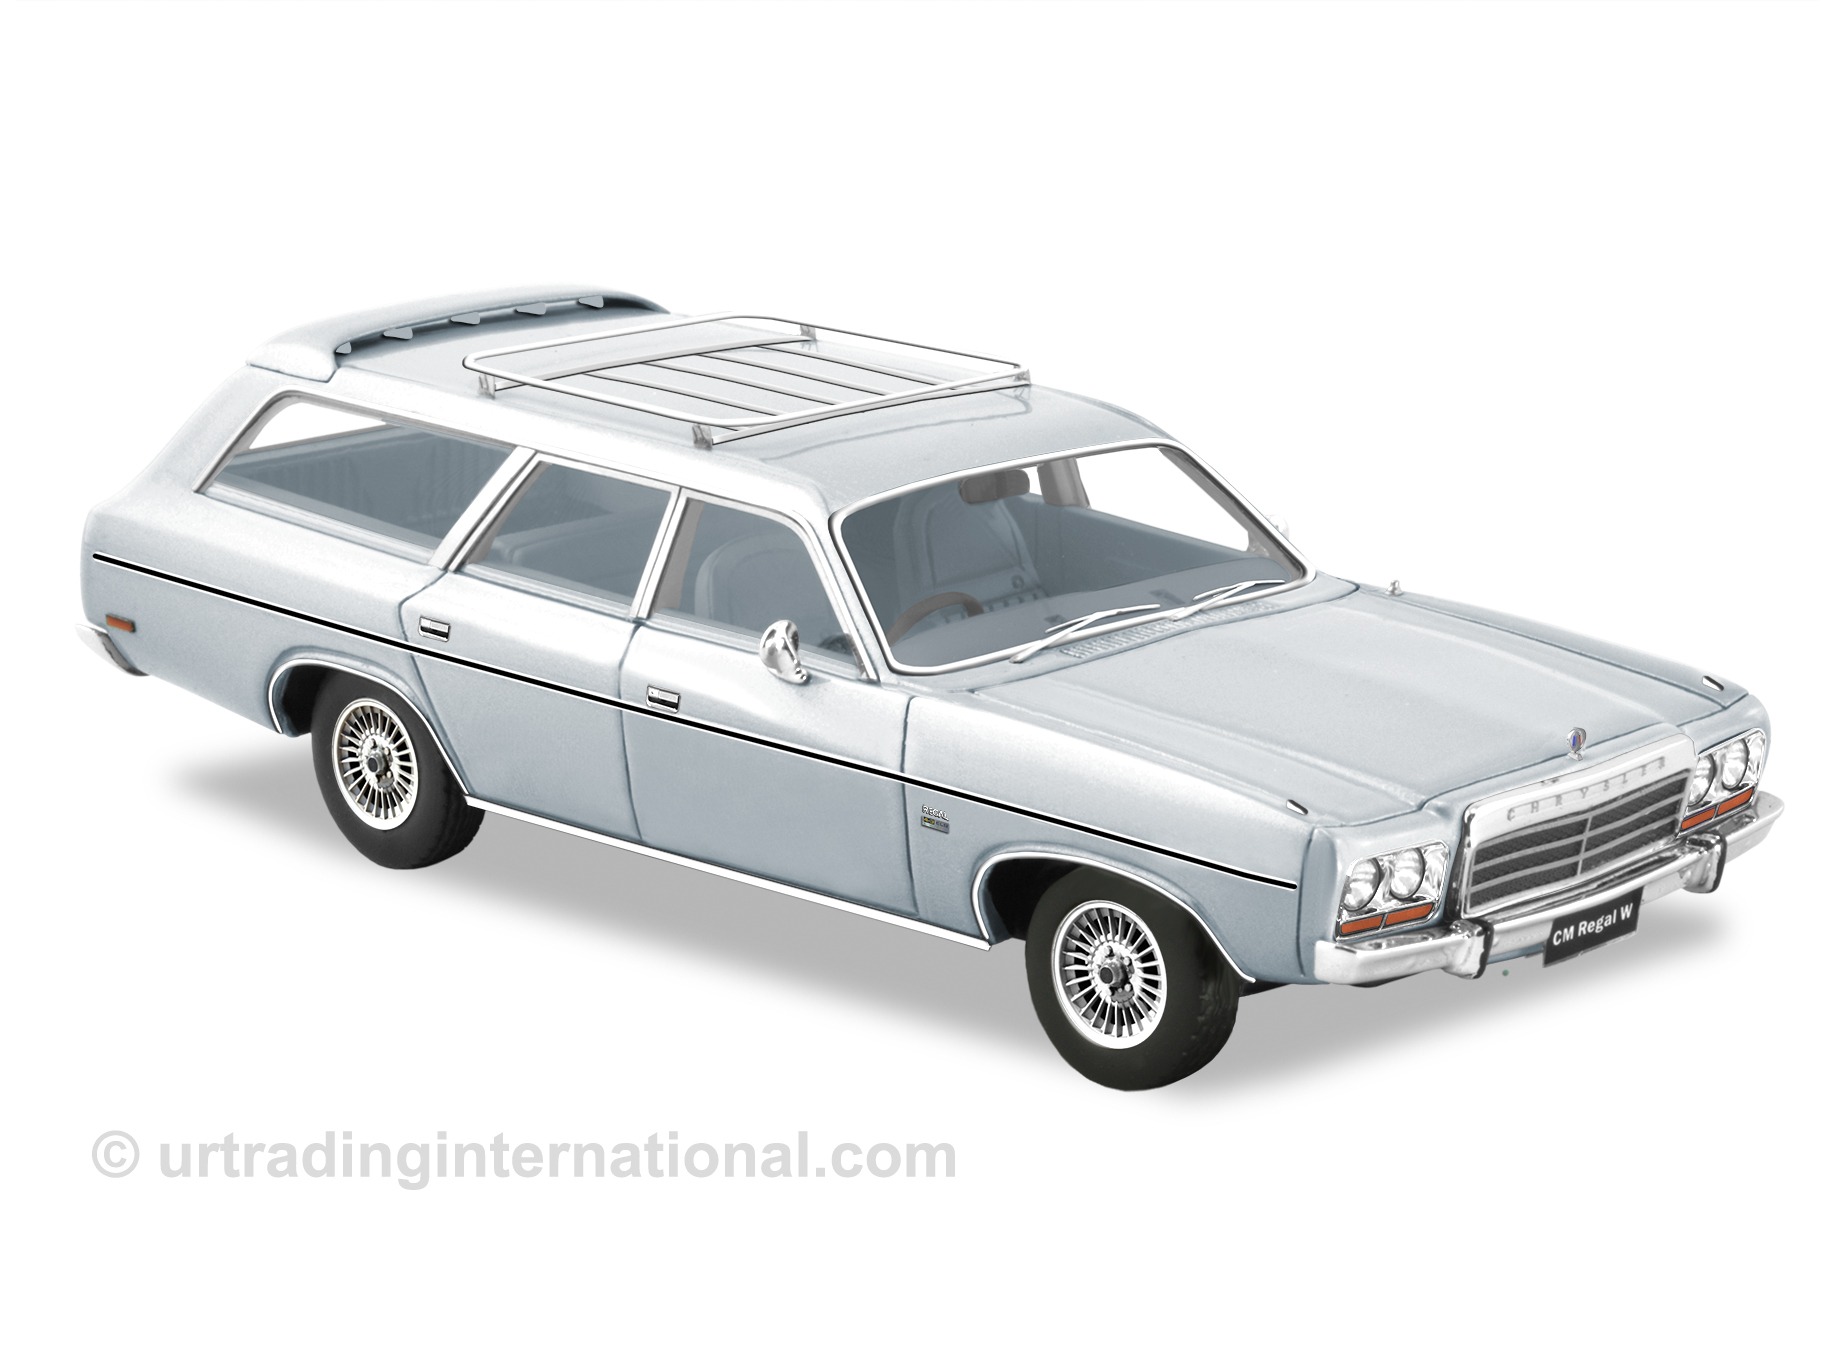 1981 CM Valiant Regal Wagon – Dove Silver